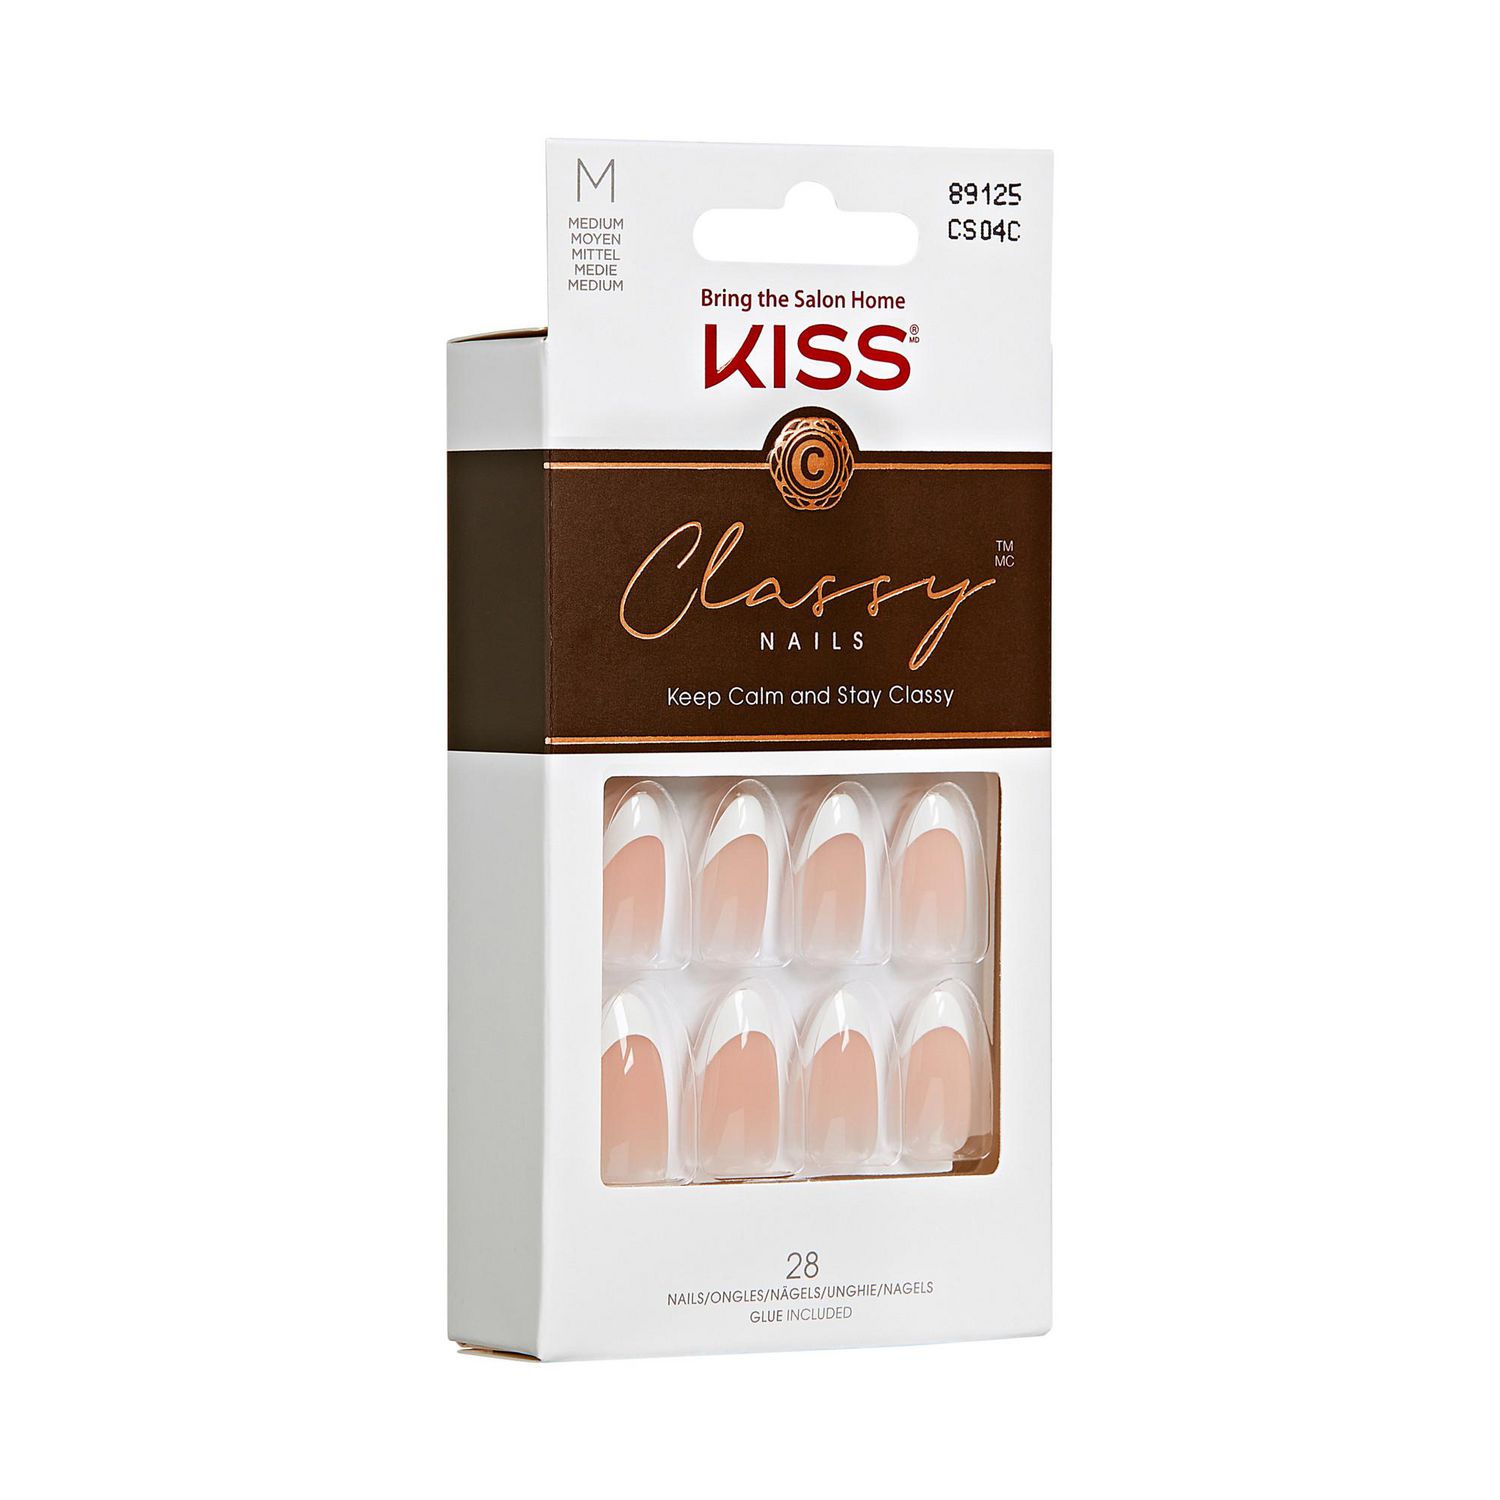 KISS Classy - Fake Nails, 28 Count, Medium, French nails. 